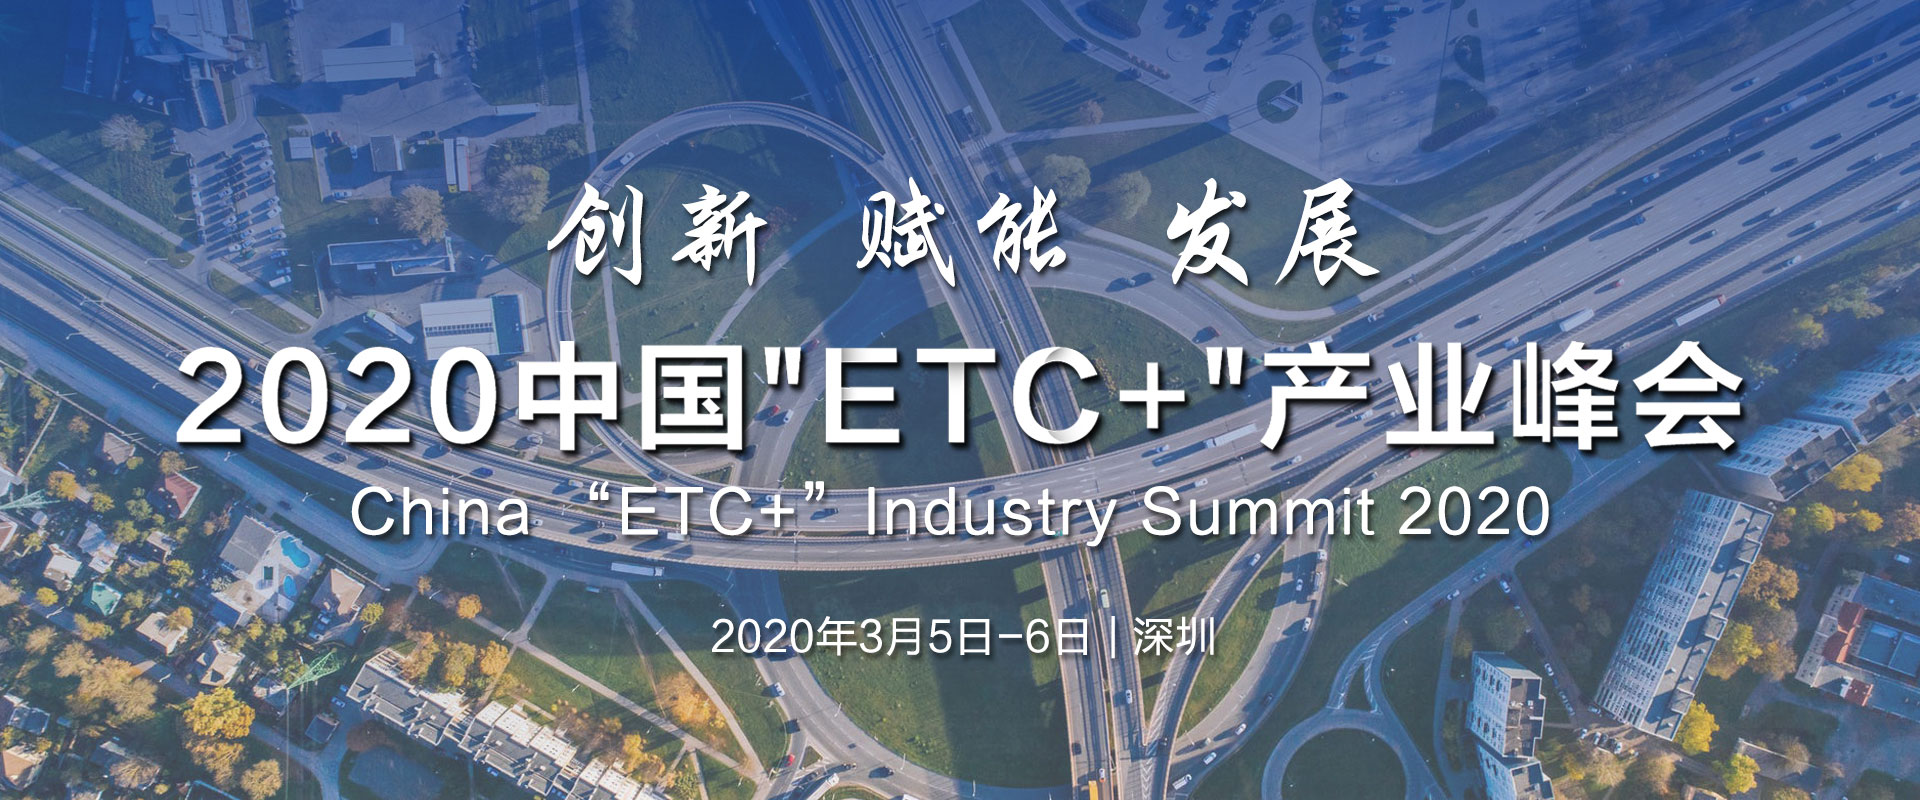 2020中国“ETC+”产业峰会